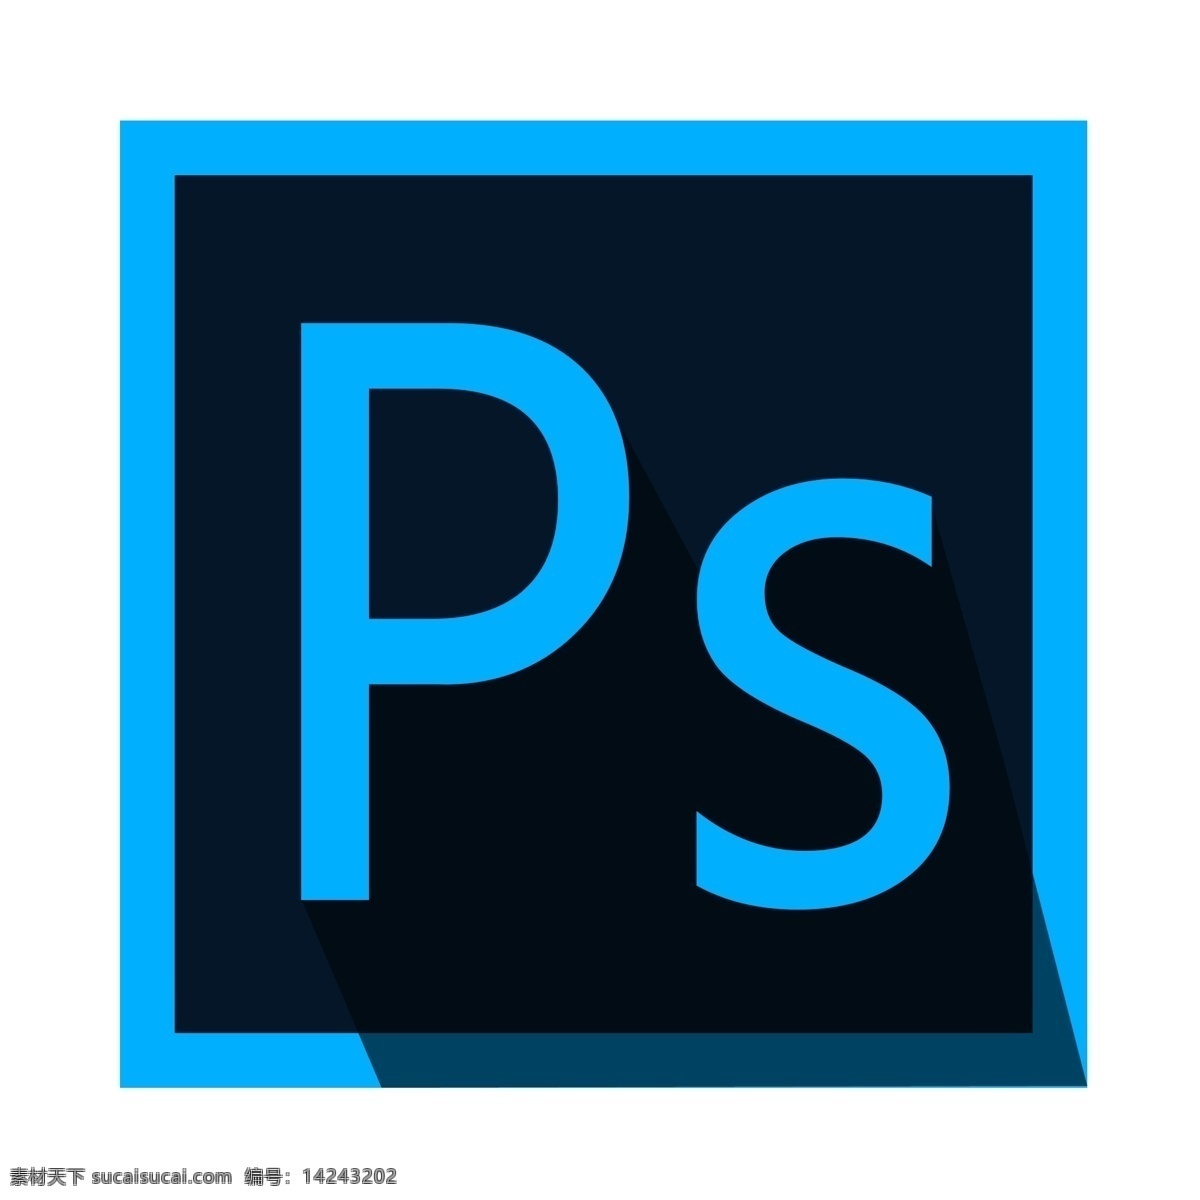 设计师 常用 图像处理 软件 photoshop ps logo 大型绘图软件 设计师常用 像素级别 编辑 图形 文字